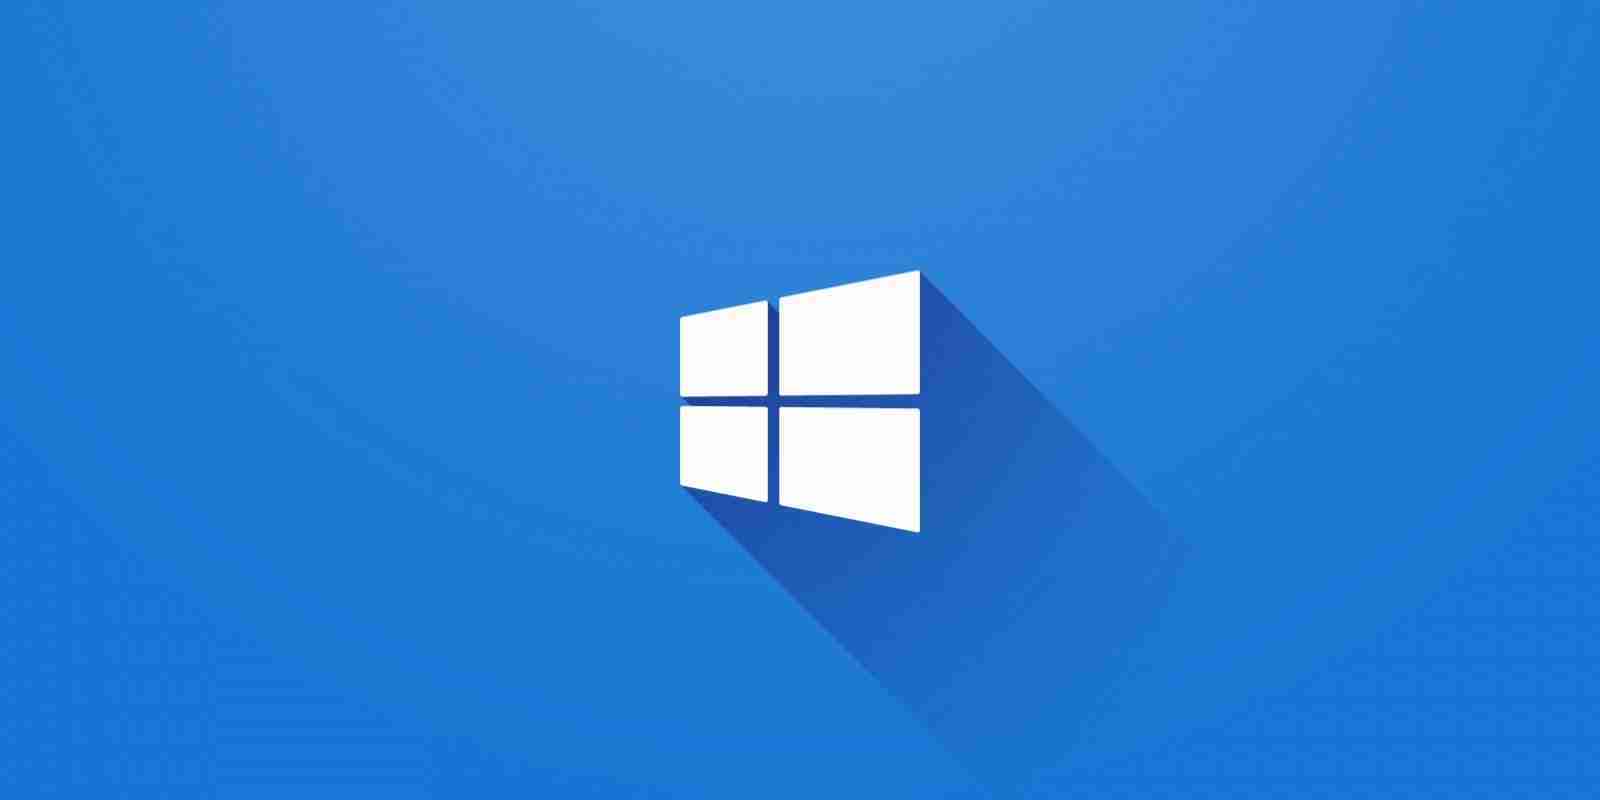 Windows 10 20H2: Cập nhật mới nhất của Windows 10, phiên bản 20H2 đã được phát hành và mang đến những tính năng cực kì hữu ích. Hãy xem hình ảnh liên quan để tìm hiểu thêm về những sự thay đổi đáng chú ý của phiên bản này!